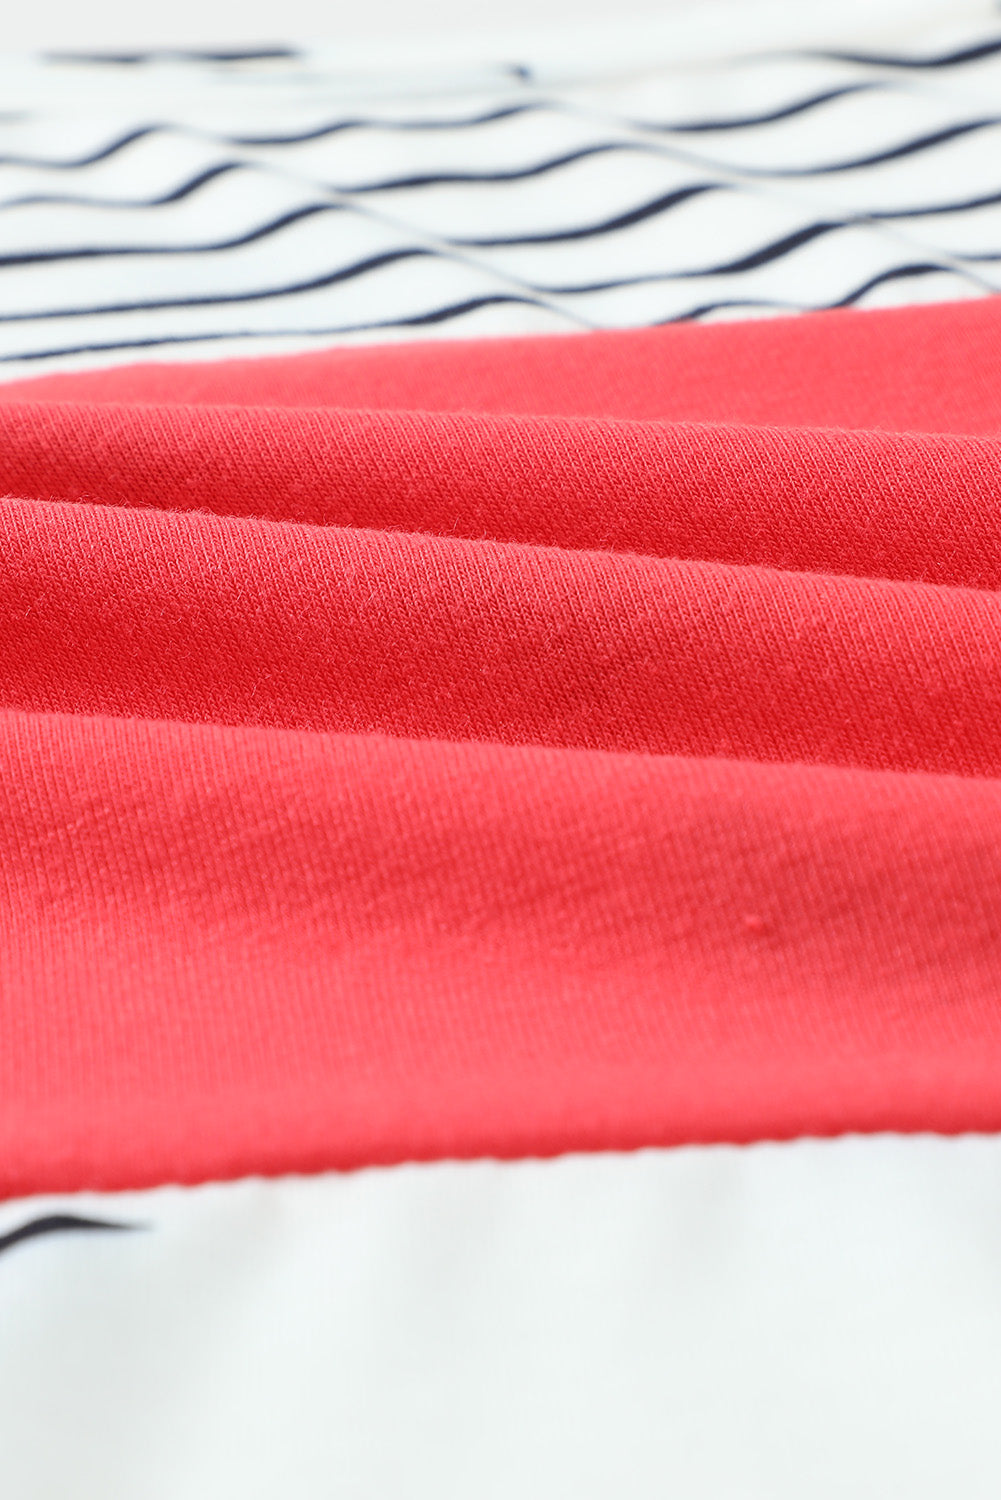 White & Red Stripes Stars Print Sleeveless Plus Size Top